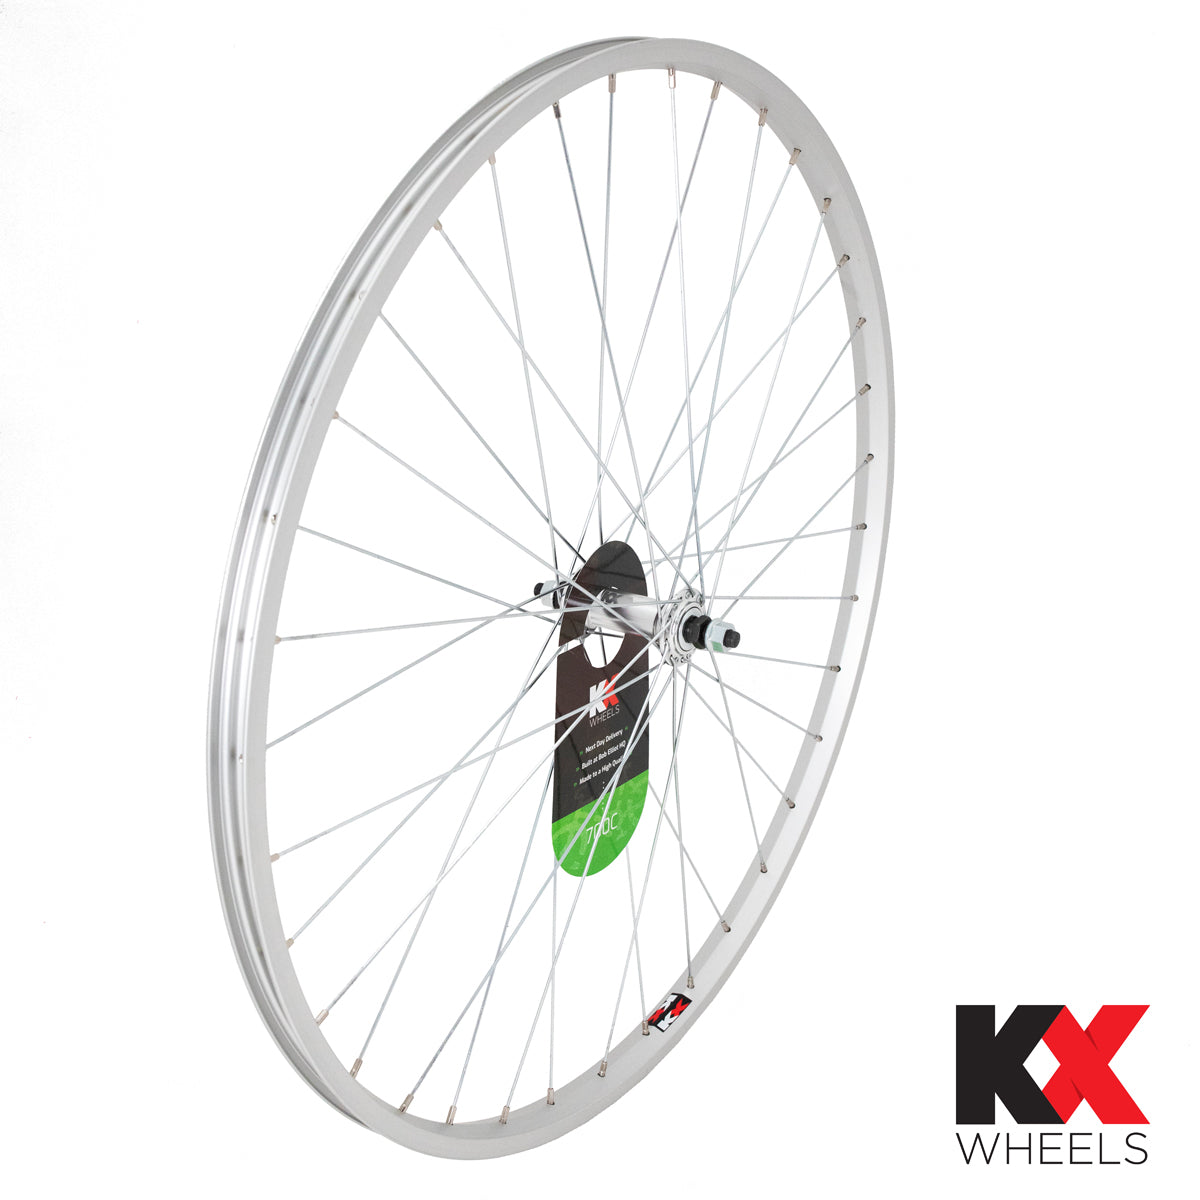 KX Wheels Single Wall Solid Axle 700c Front Bike Wheel Silver